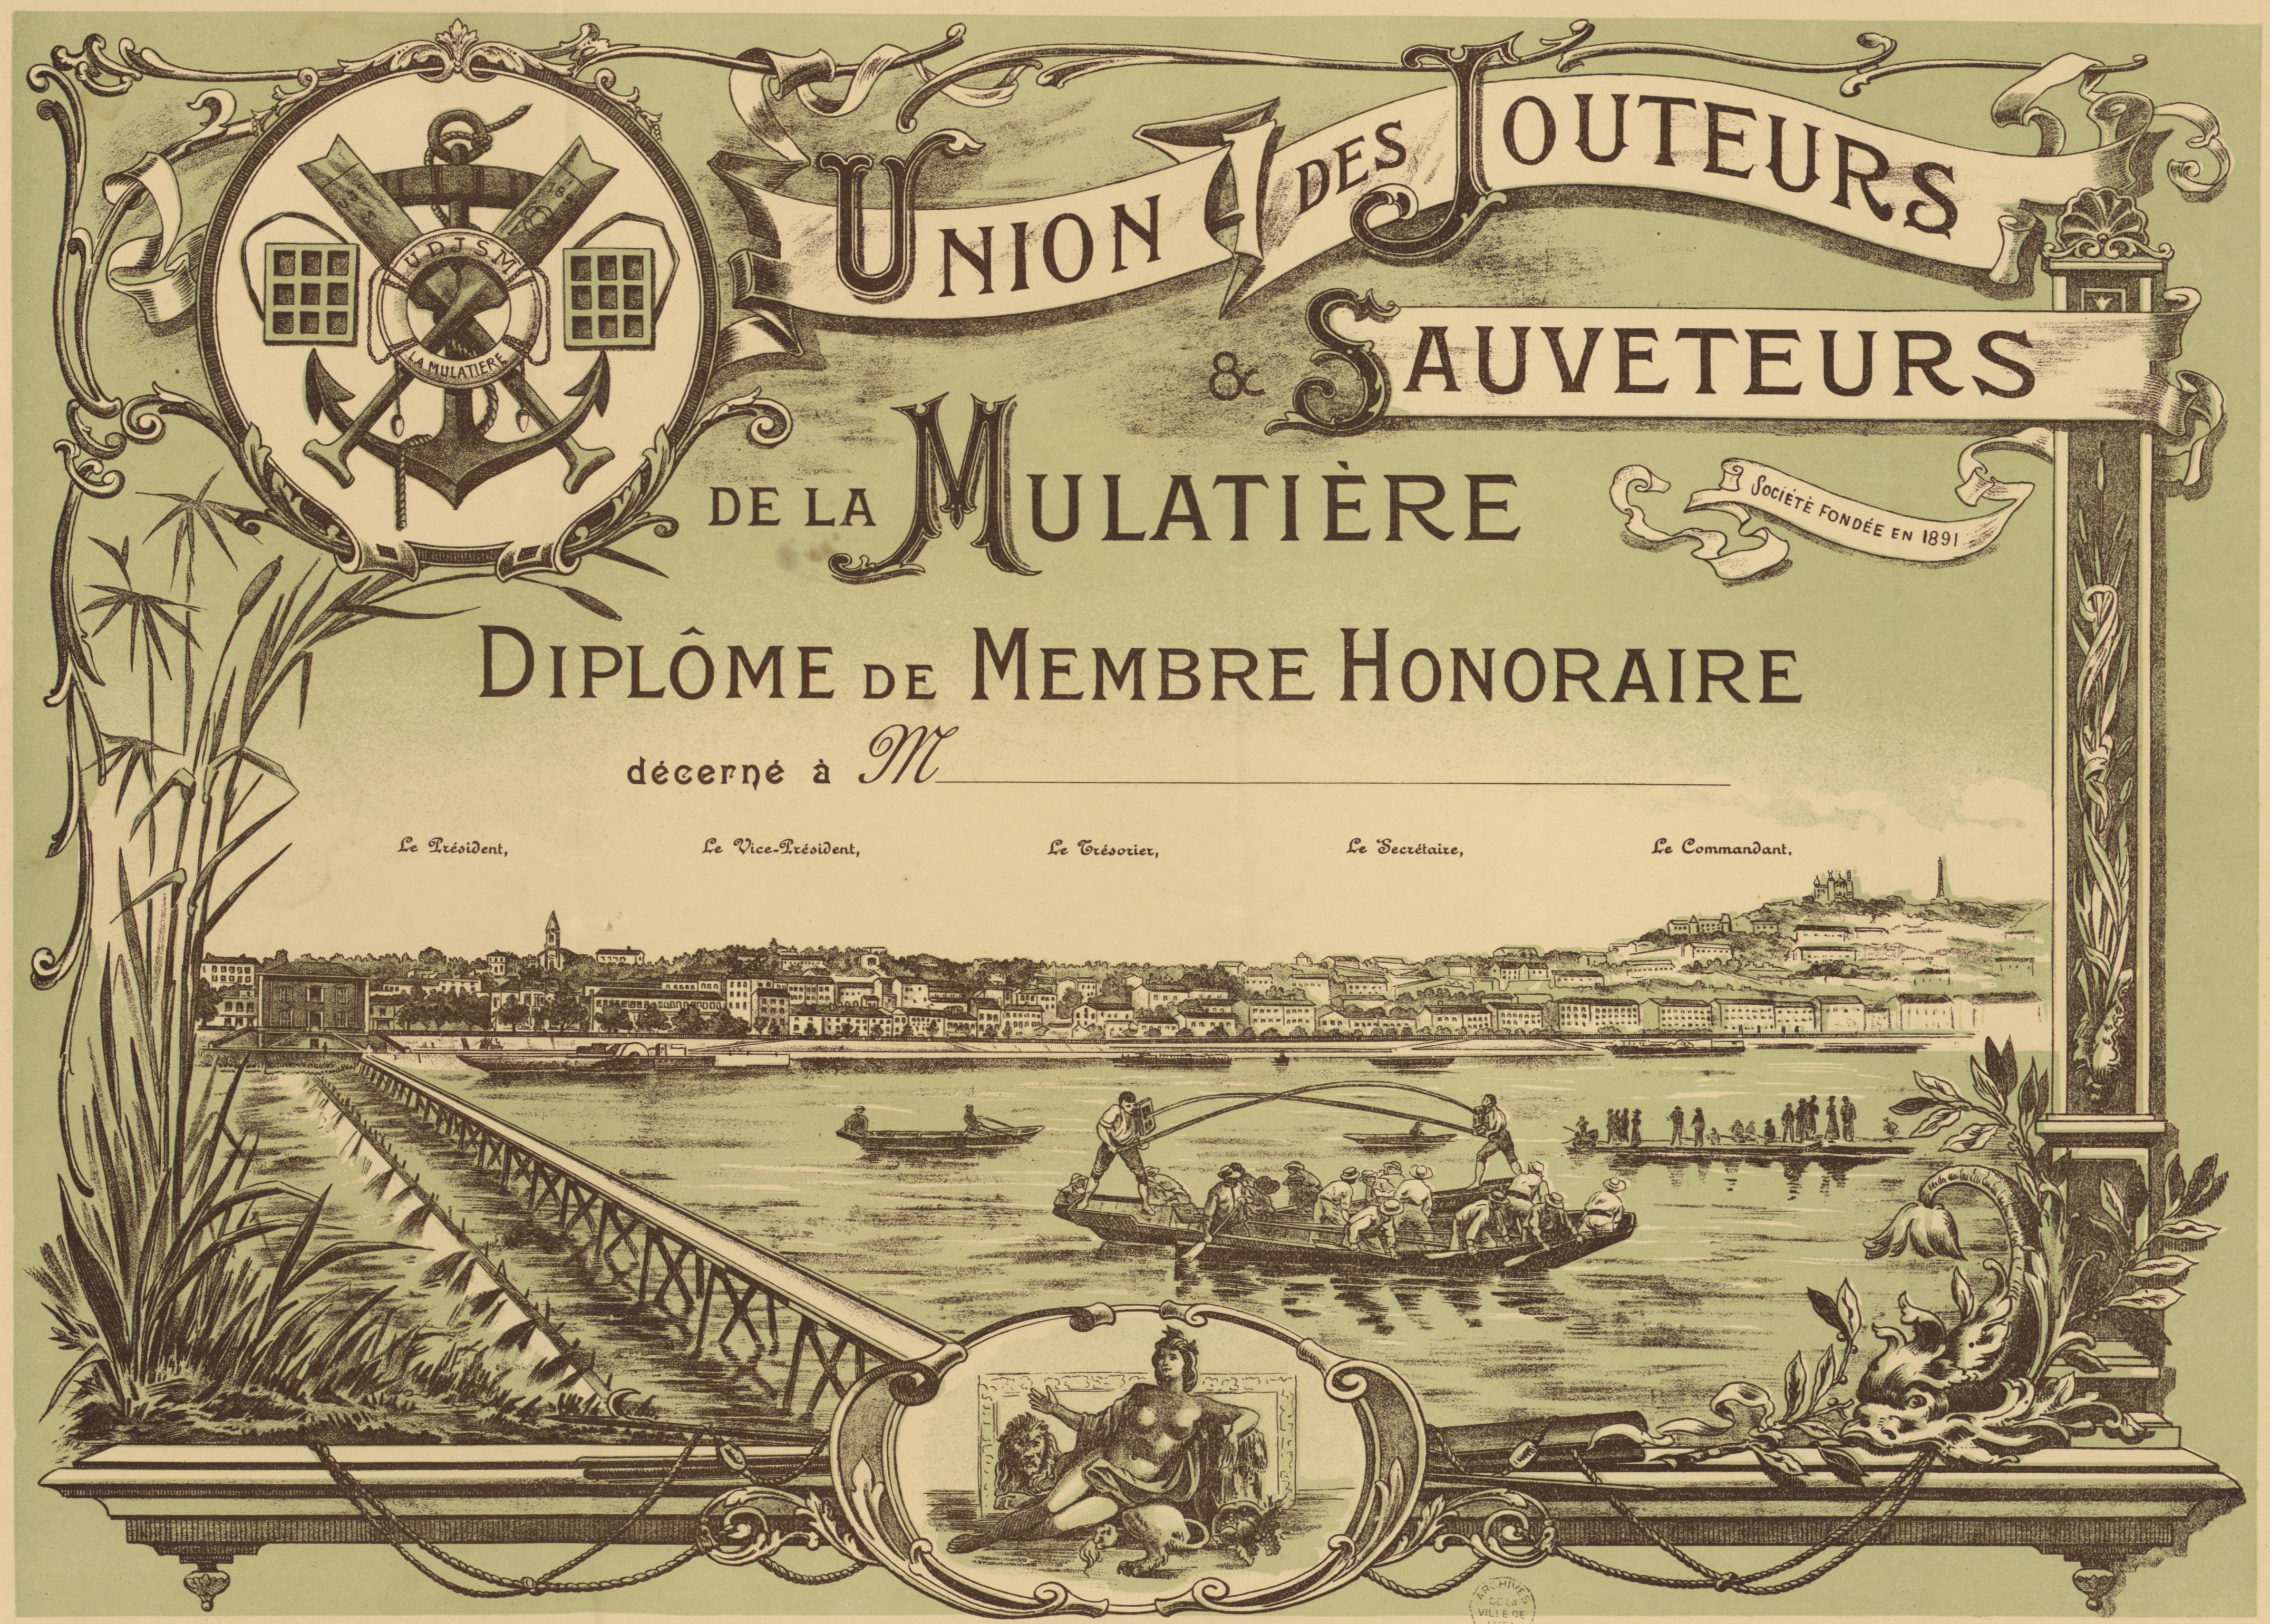 Union des jouteurs et sauveteurs de la Mulatière, diplôme de membre d'honneur (1910, cote 16FI/471)